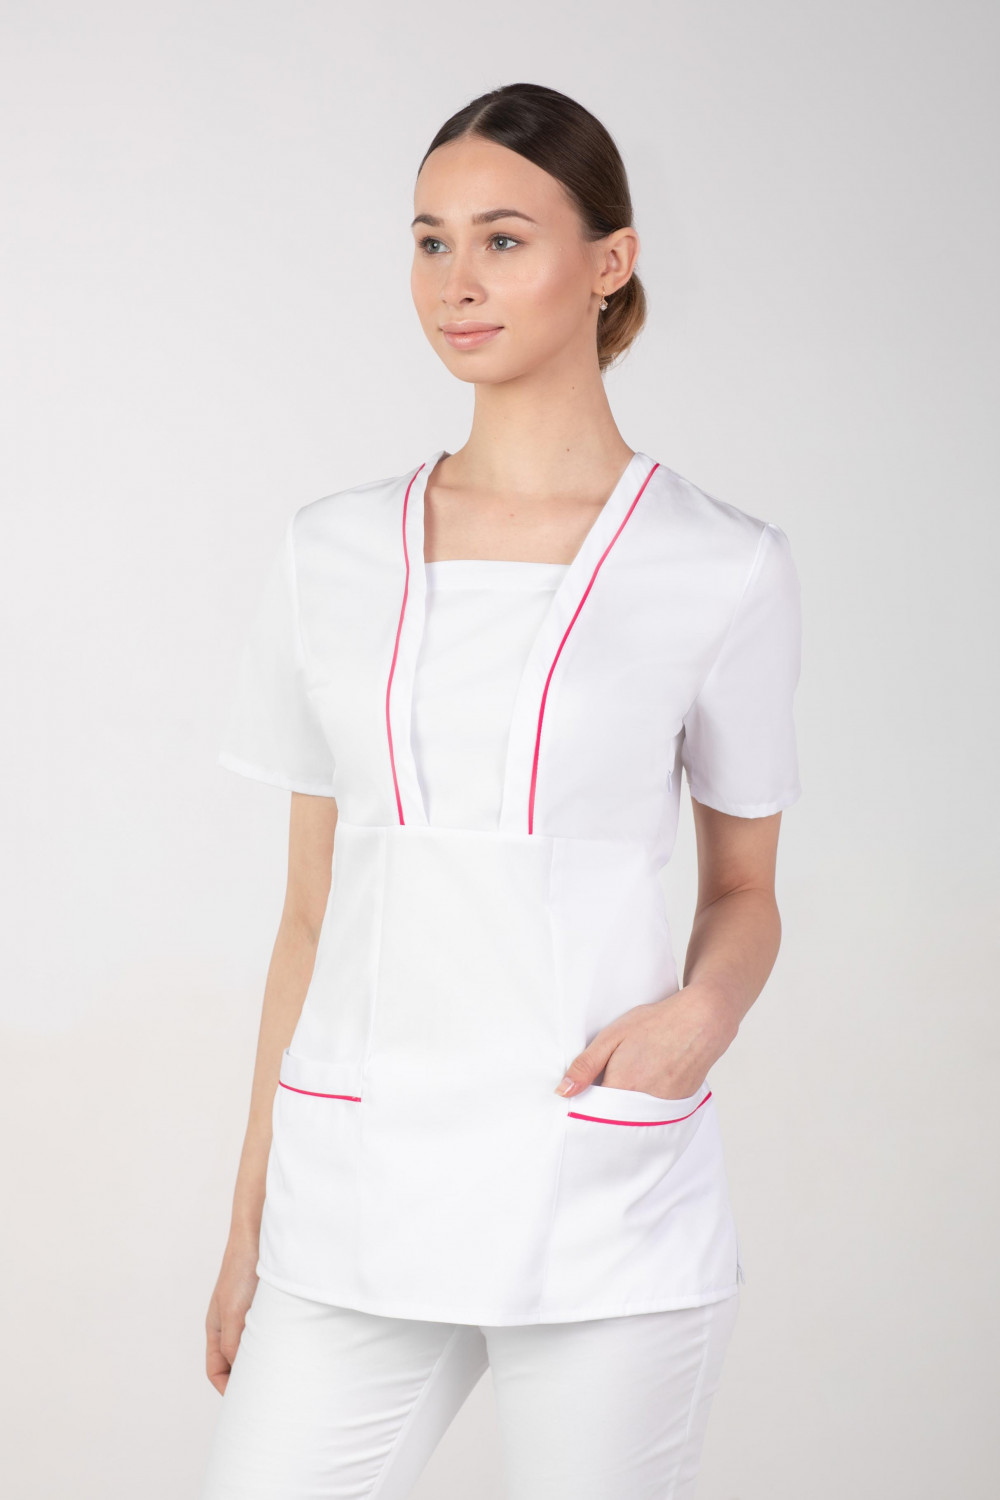 M-054X Elastyczna bluza damska medyczna kosmetyczna fartuch uniform kolor biały